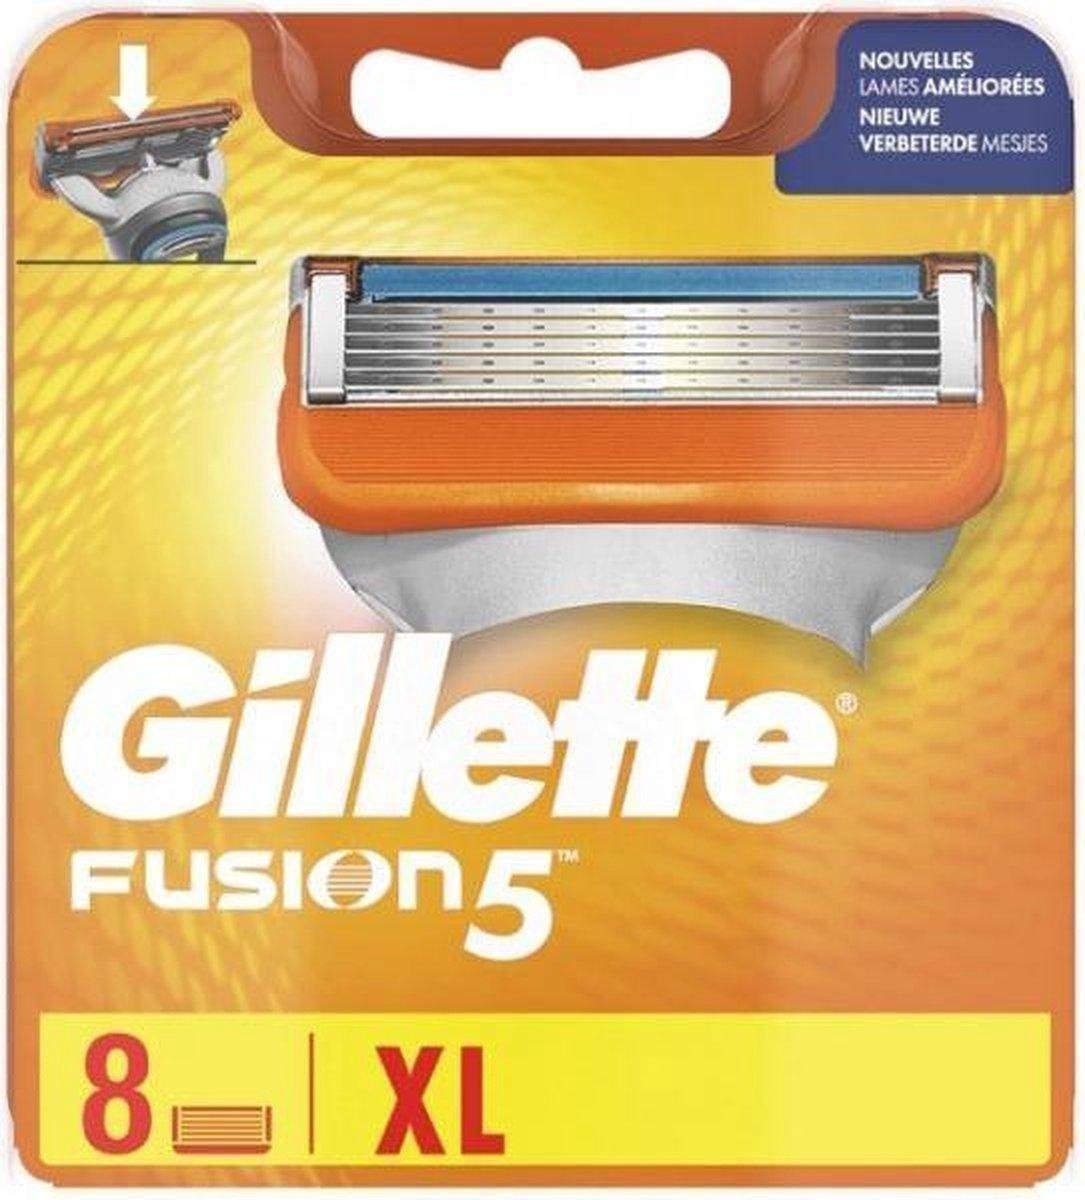 Gillette Fusion5 Scheermesjes Voor Mannen - 8 Navulmesjes - Verpakking beschadigd